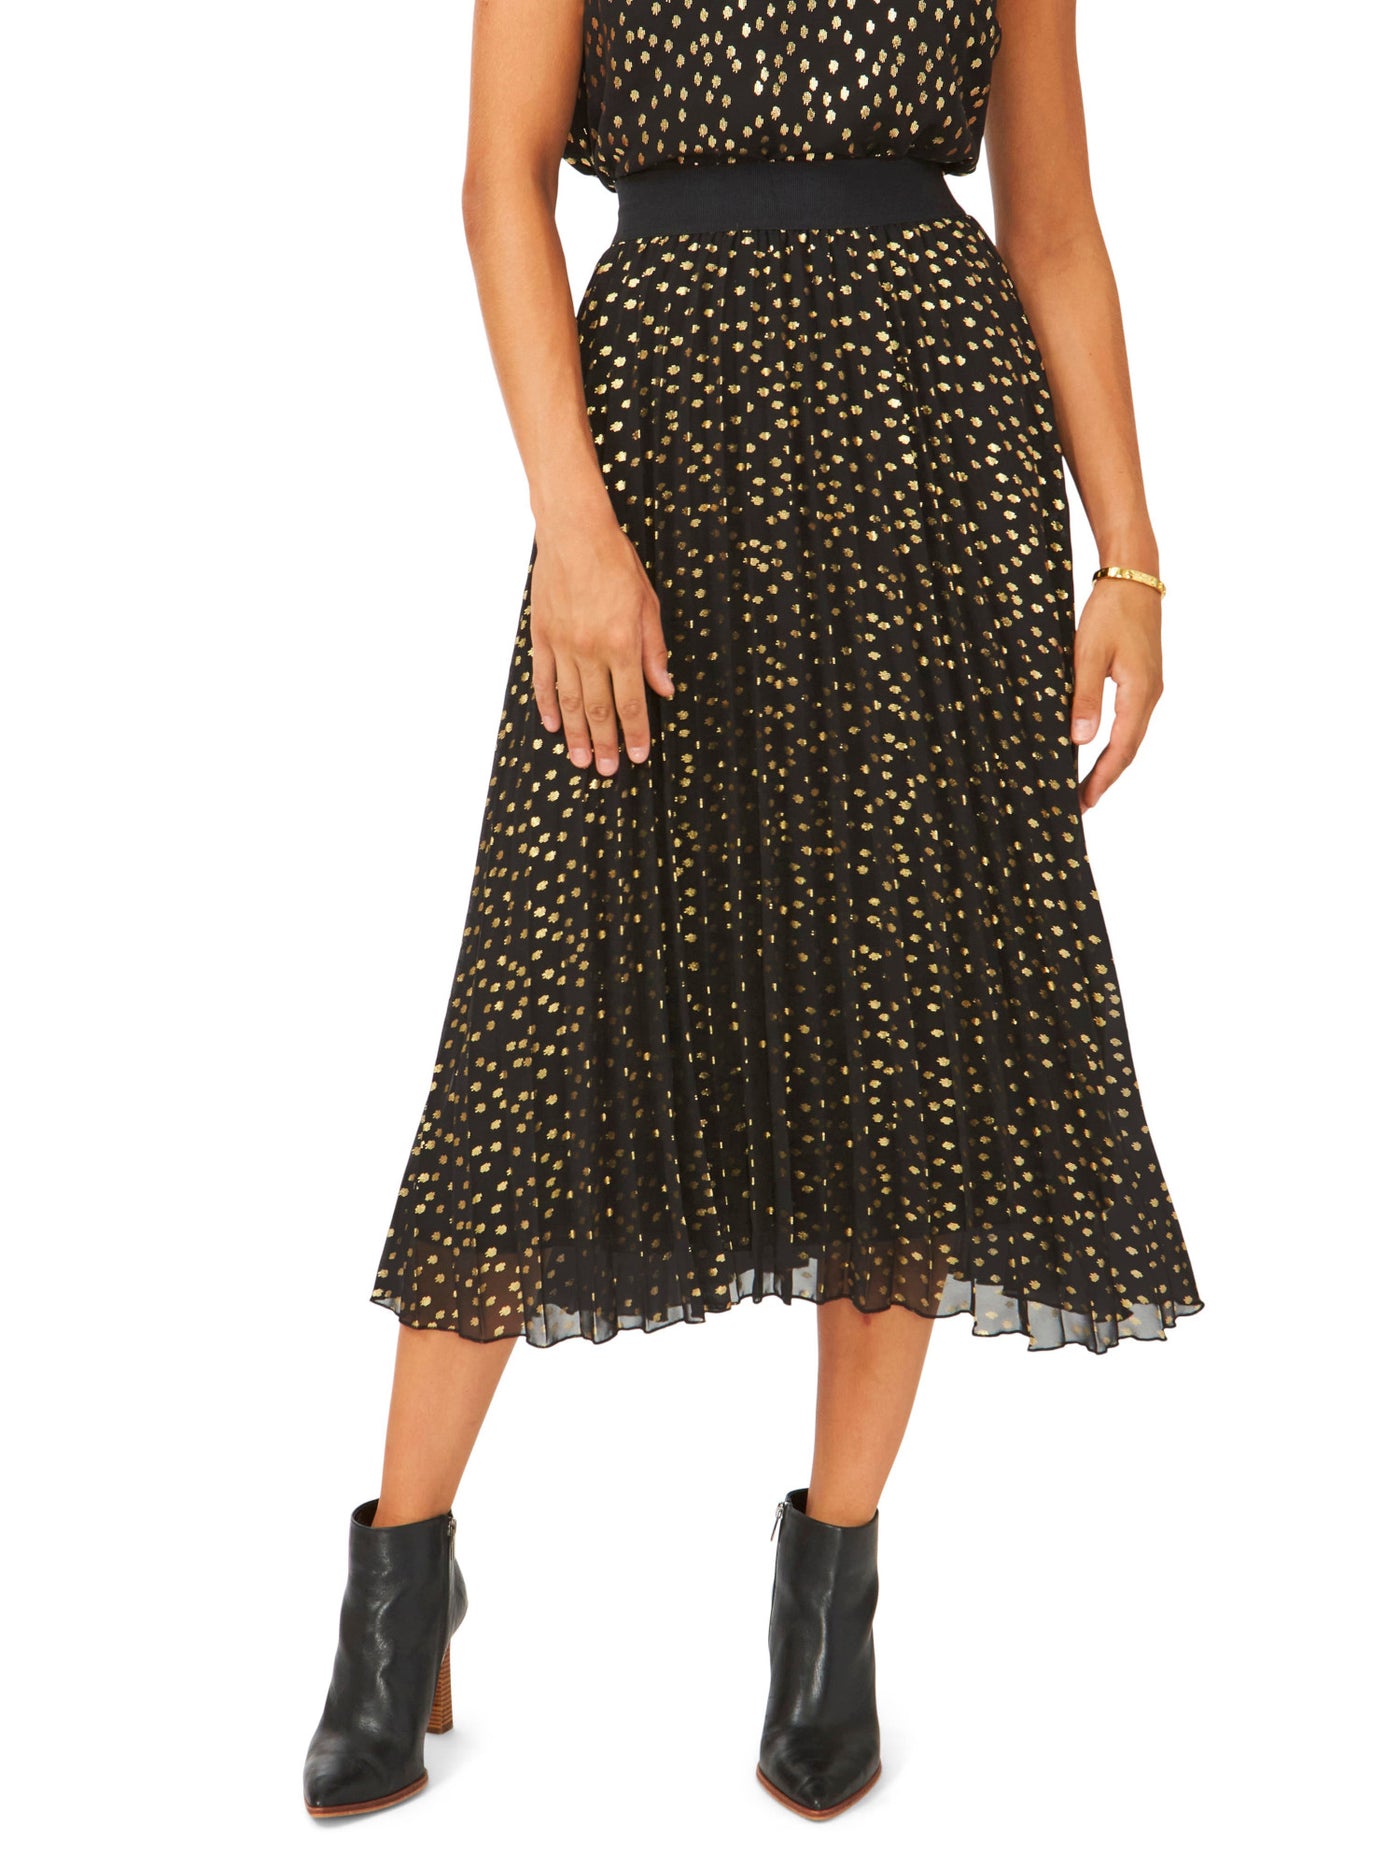 VINCE CAMUTO Womens Black Lined Elastic Waist Pull-on Printed Midi Pleated Skirt M